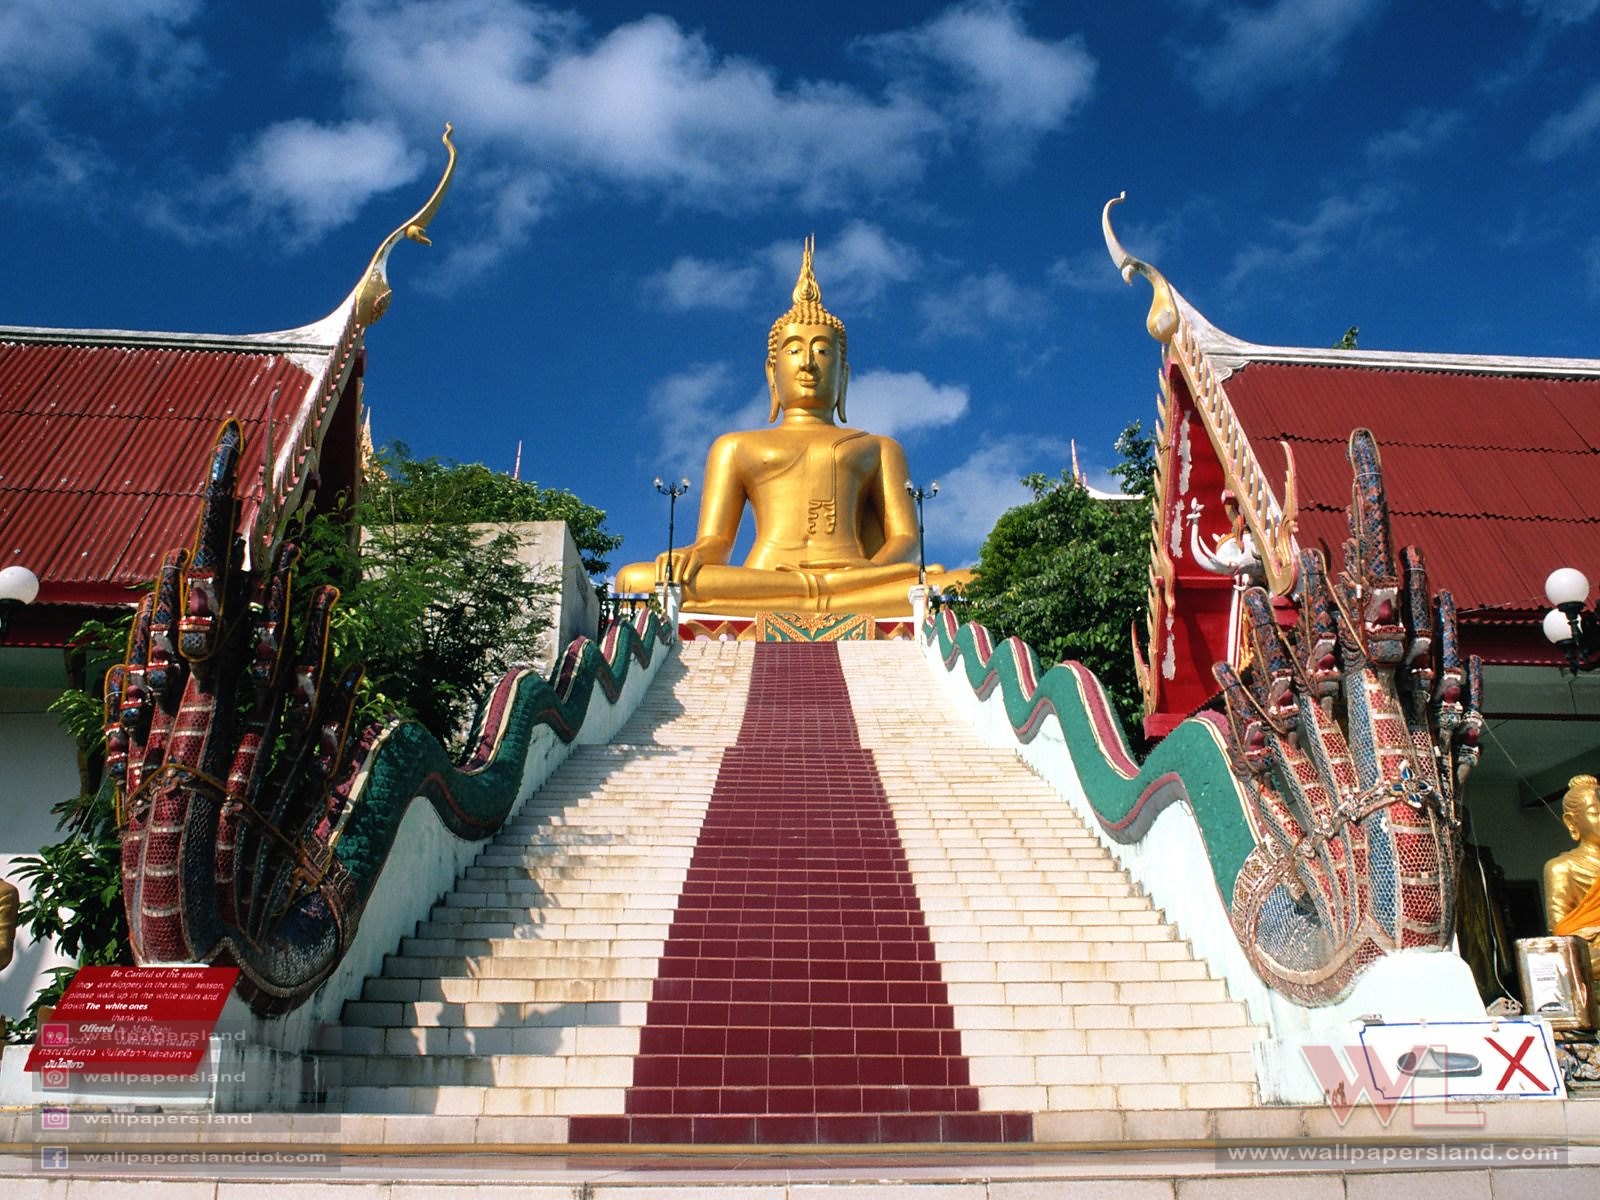 The Big Buddha Koh Samui, Samui Island, Thailand